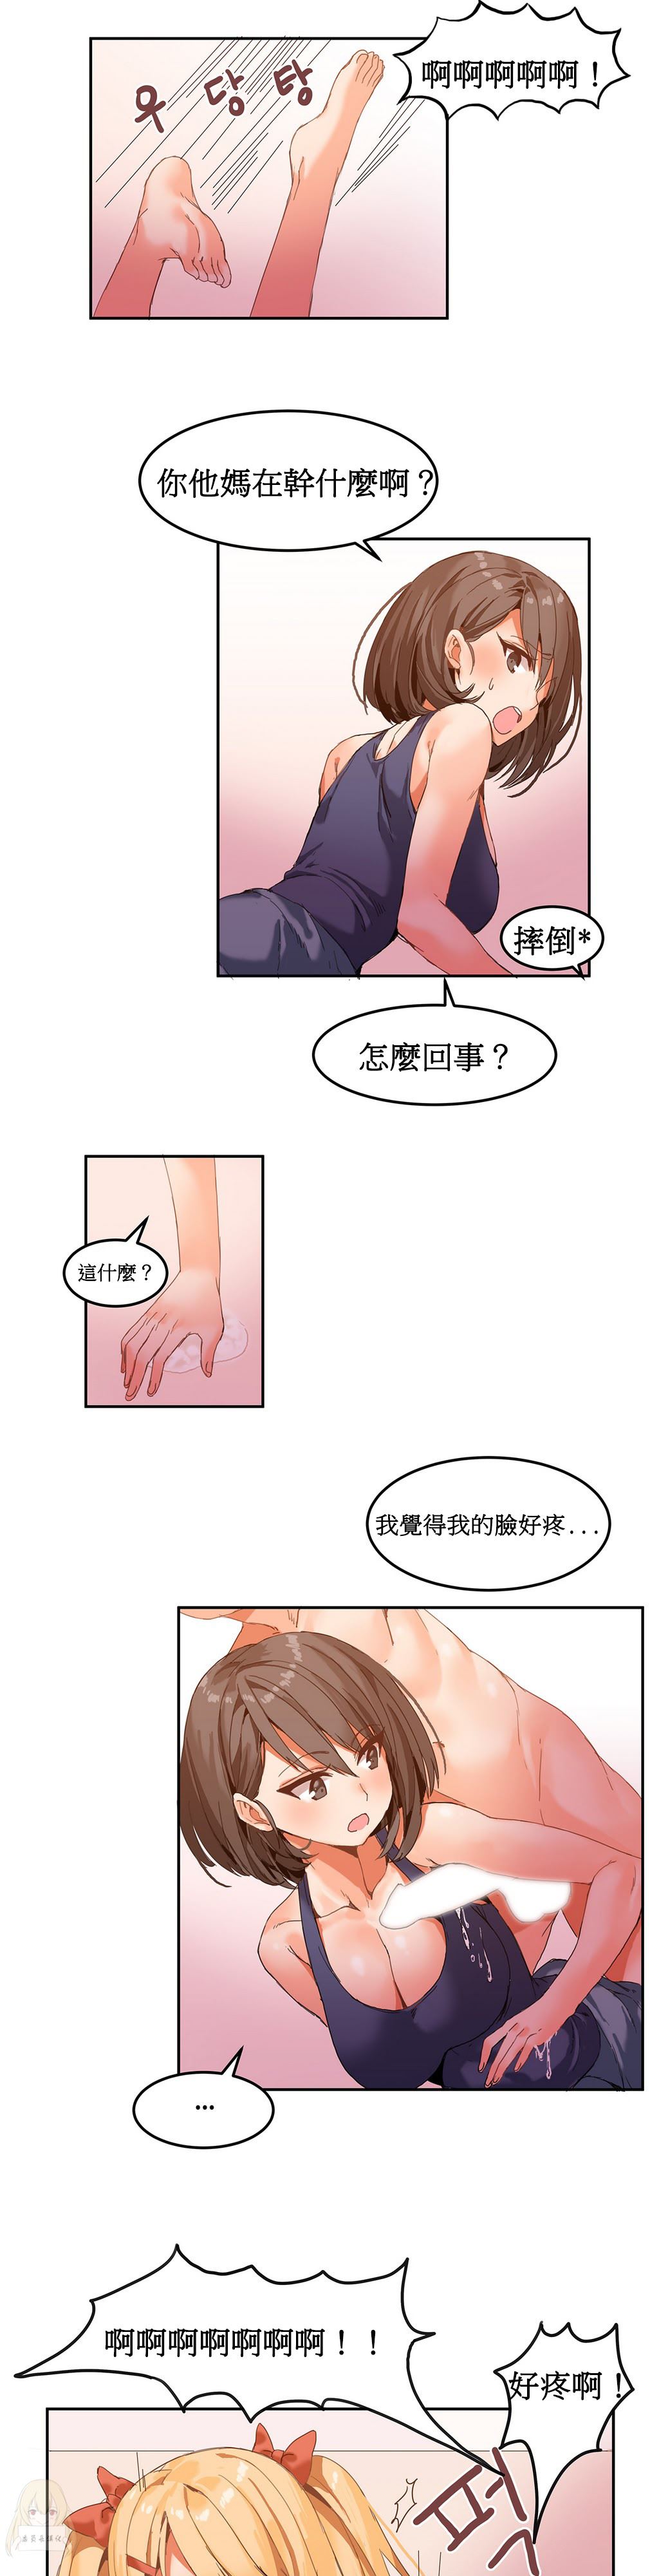 韩国污漫画 寄宿公寓-陰氣之洞 第5话 17